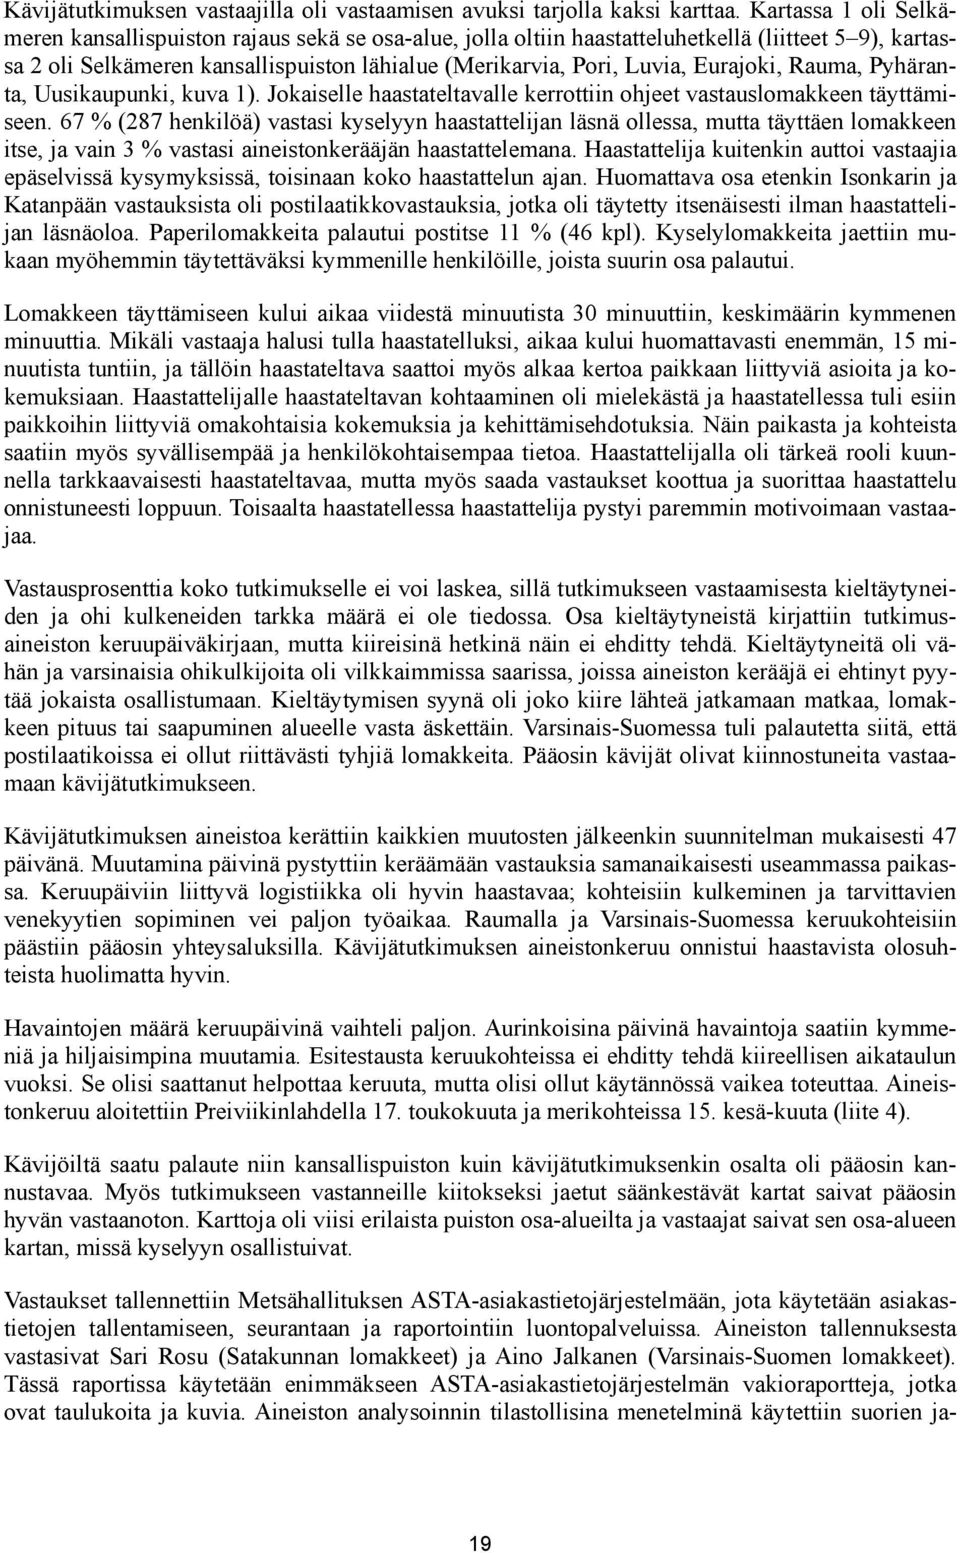 Eurajoki, Rauma, Pyhäranta, Uusikaupunki, kuva 1). Jokaiselle haastateltavalle kerrottiin ohjeet vastauslomakkeen täyttämiseen.